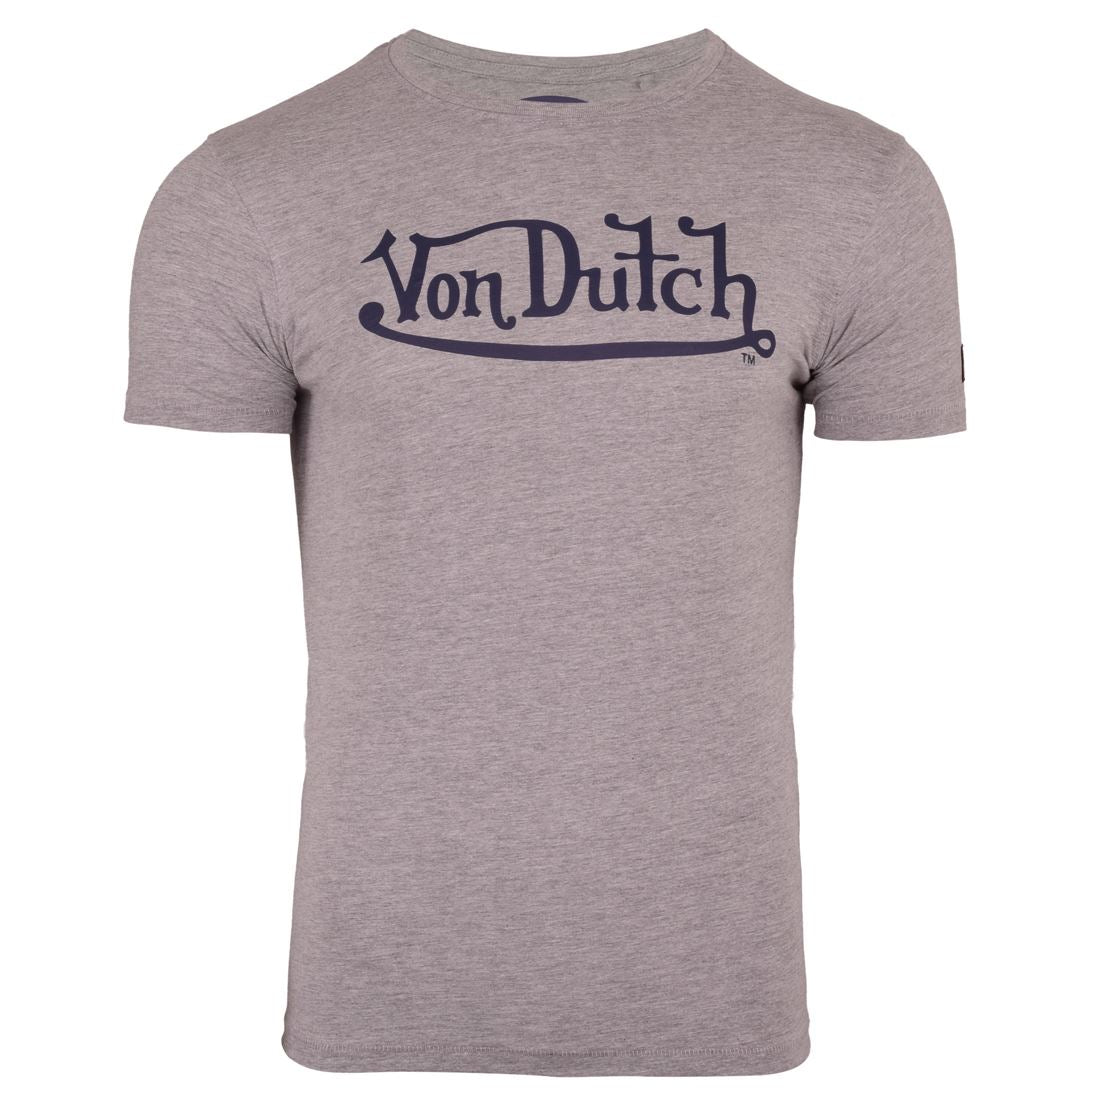 Von Dutch Men's Short Sleeved Crew Neck T Shirt Graphic Logo Cotton Fashion Tee